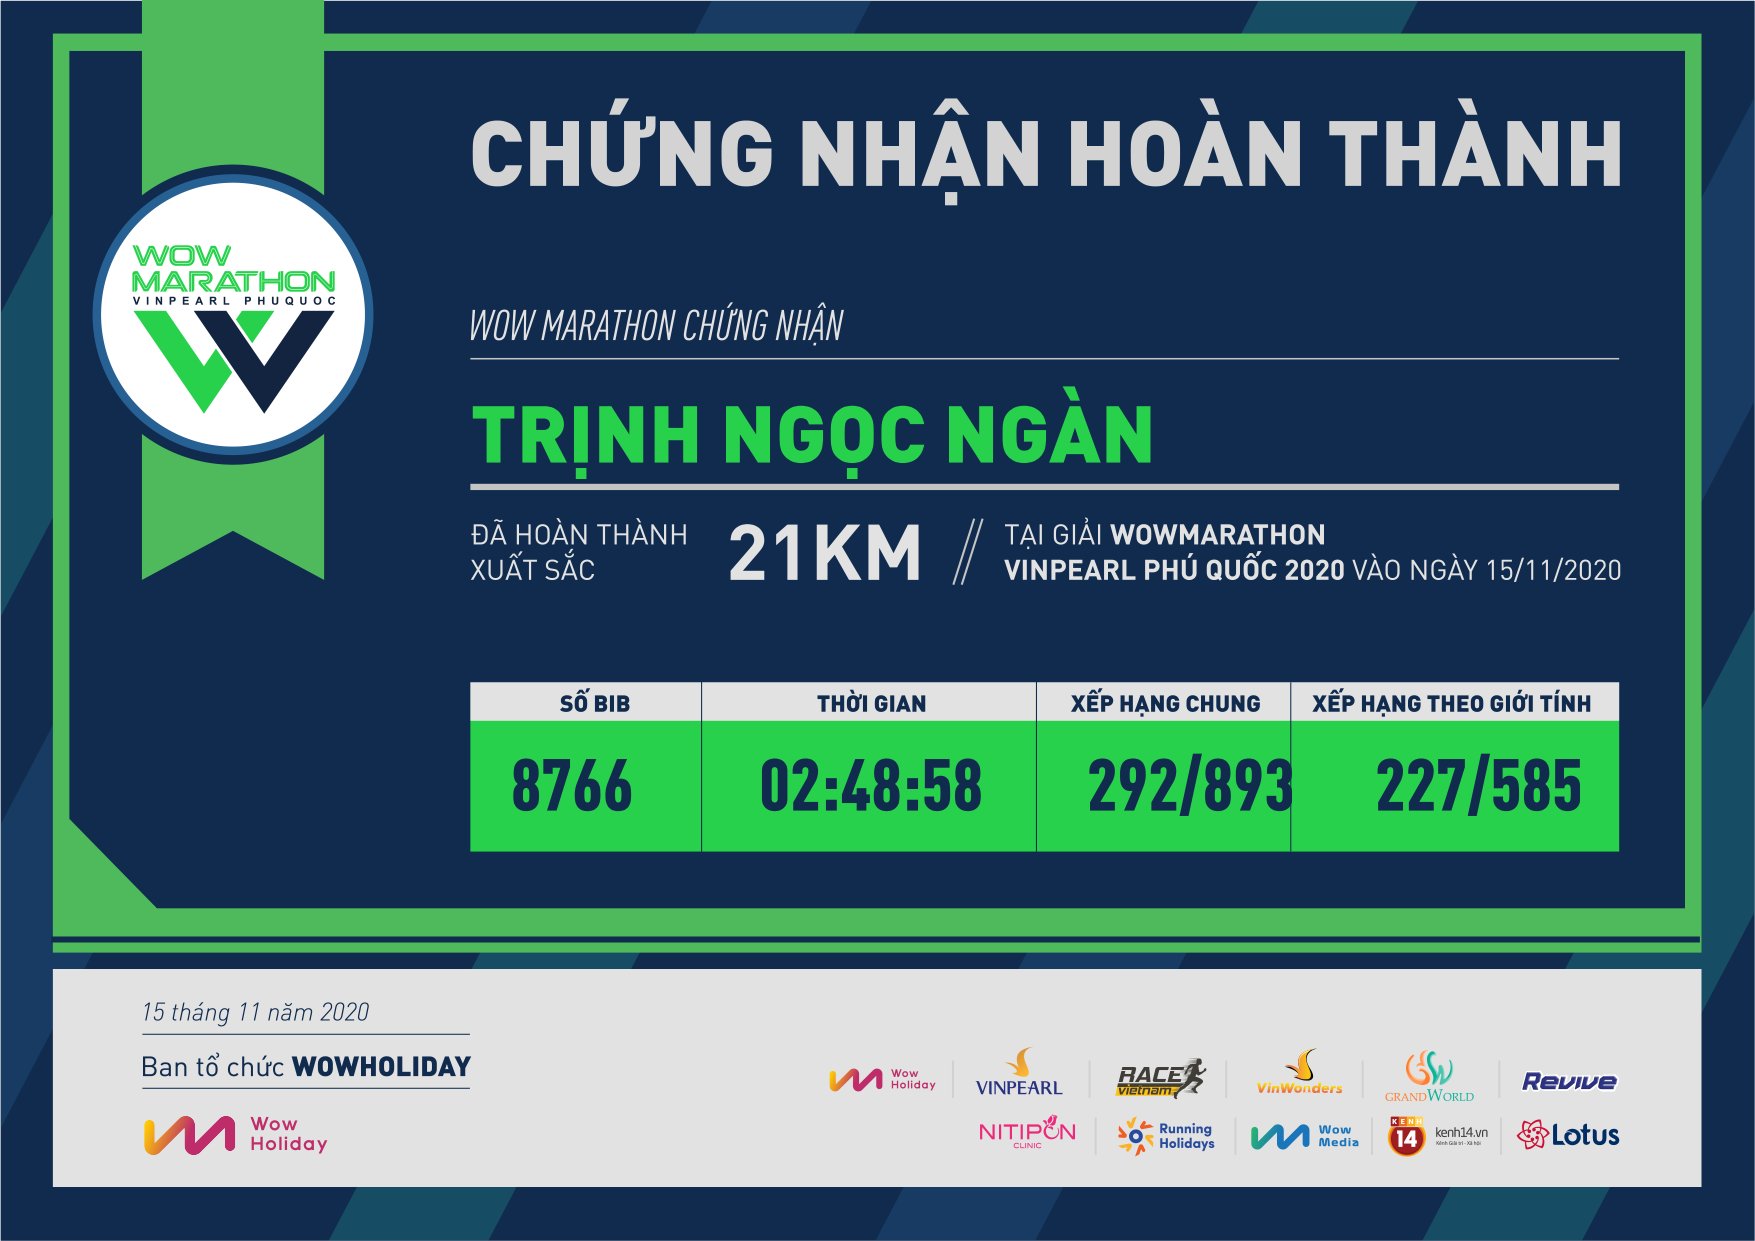 8766 - Trịnh Ngọc Ngàn